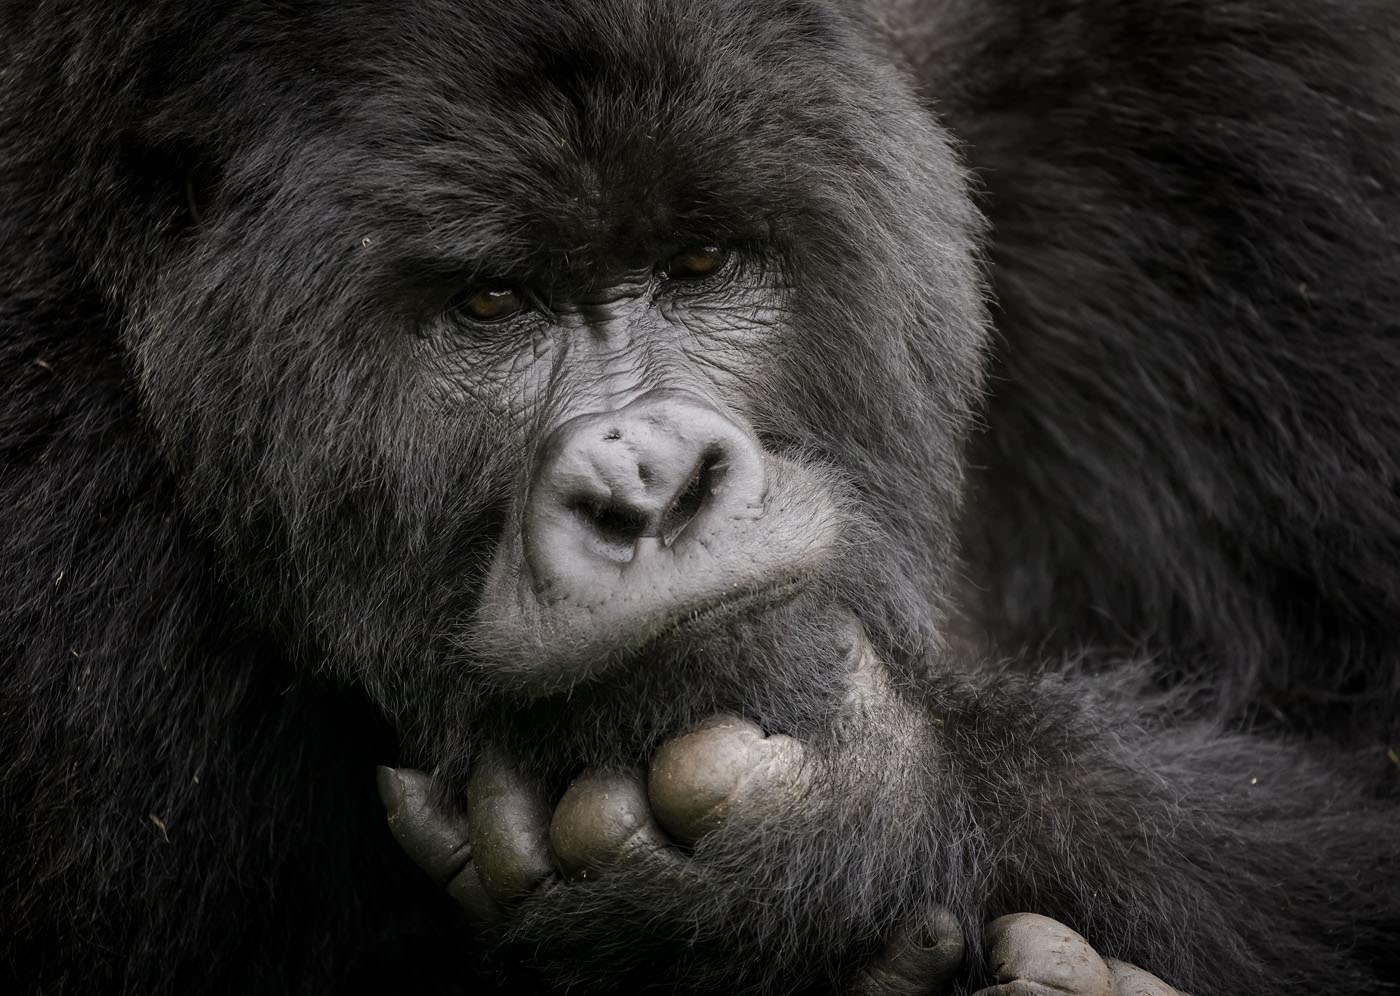 Mountain silverback gorillas